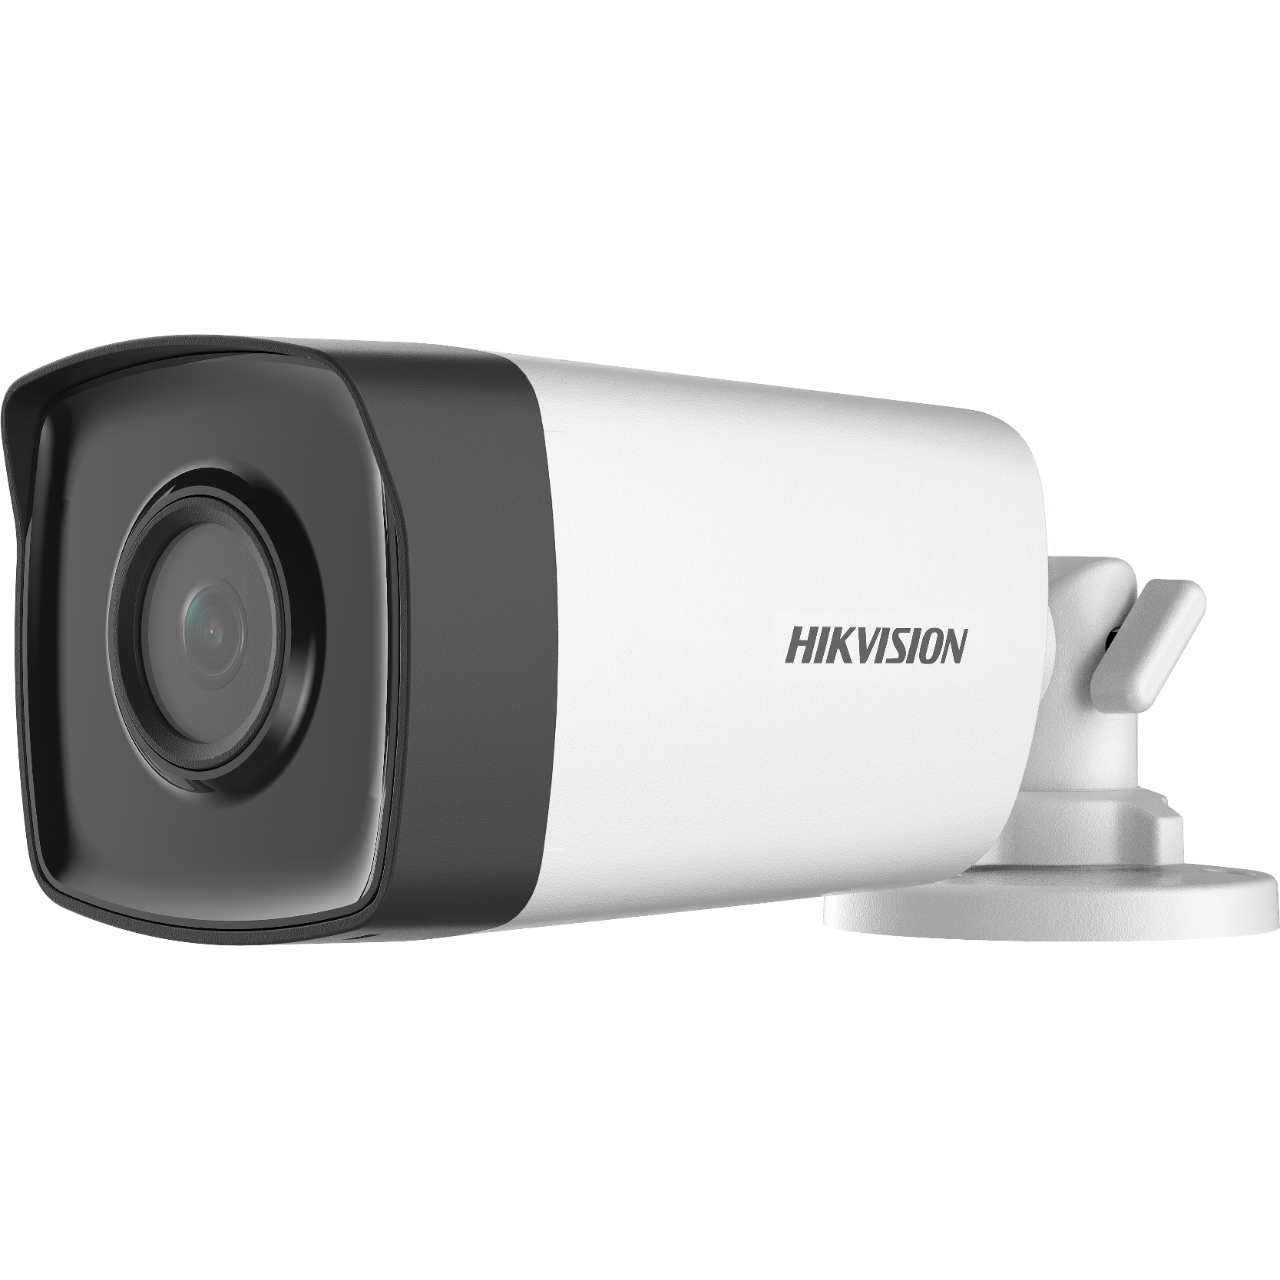 กล้อง Hikvision รุ่นDS-2CE16D0T-ITFS